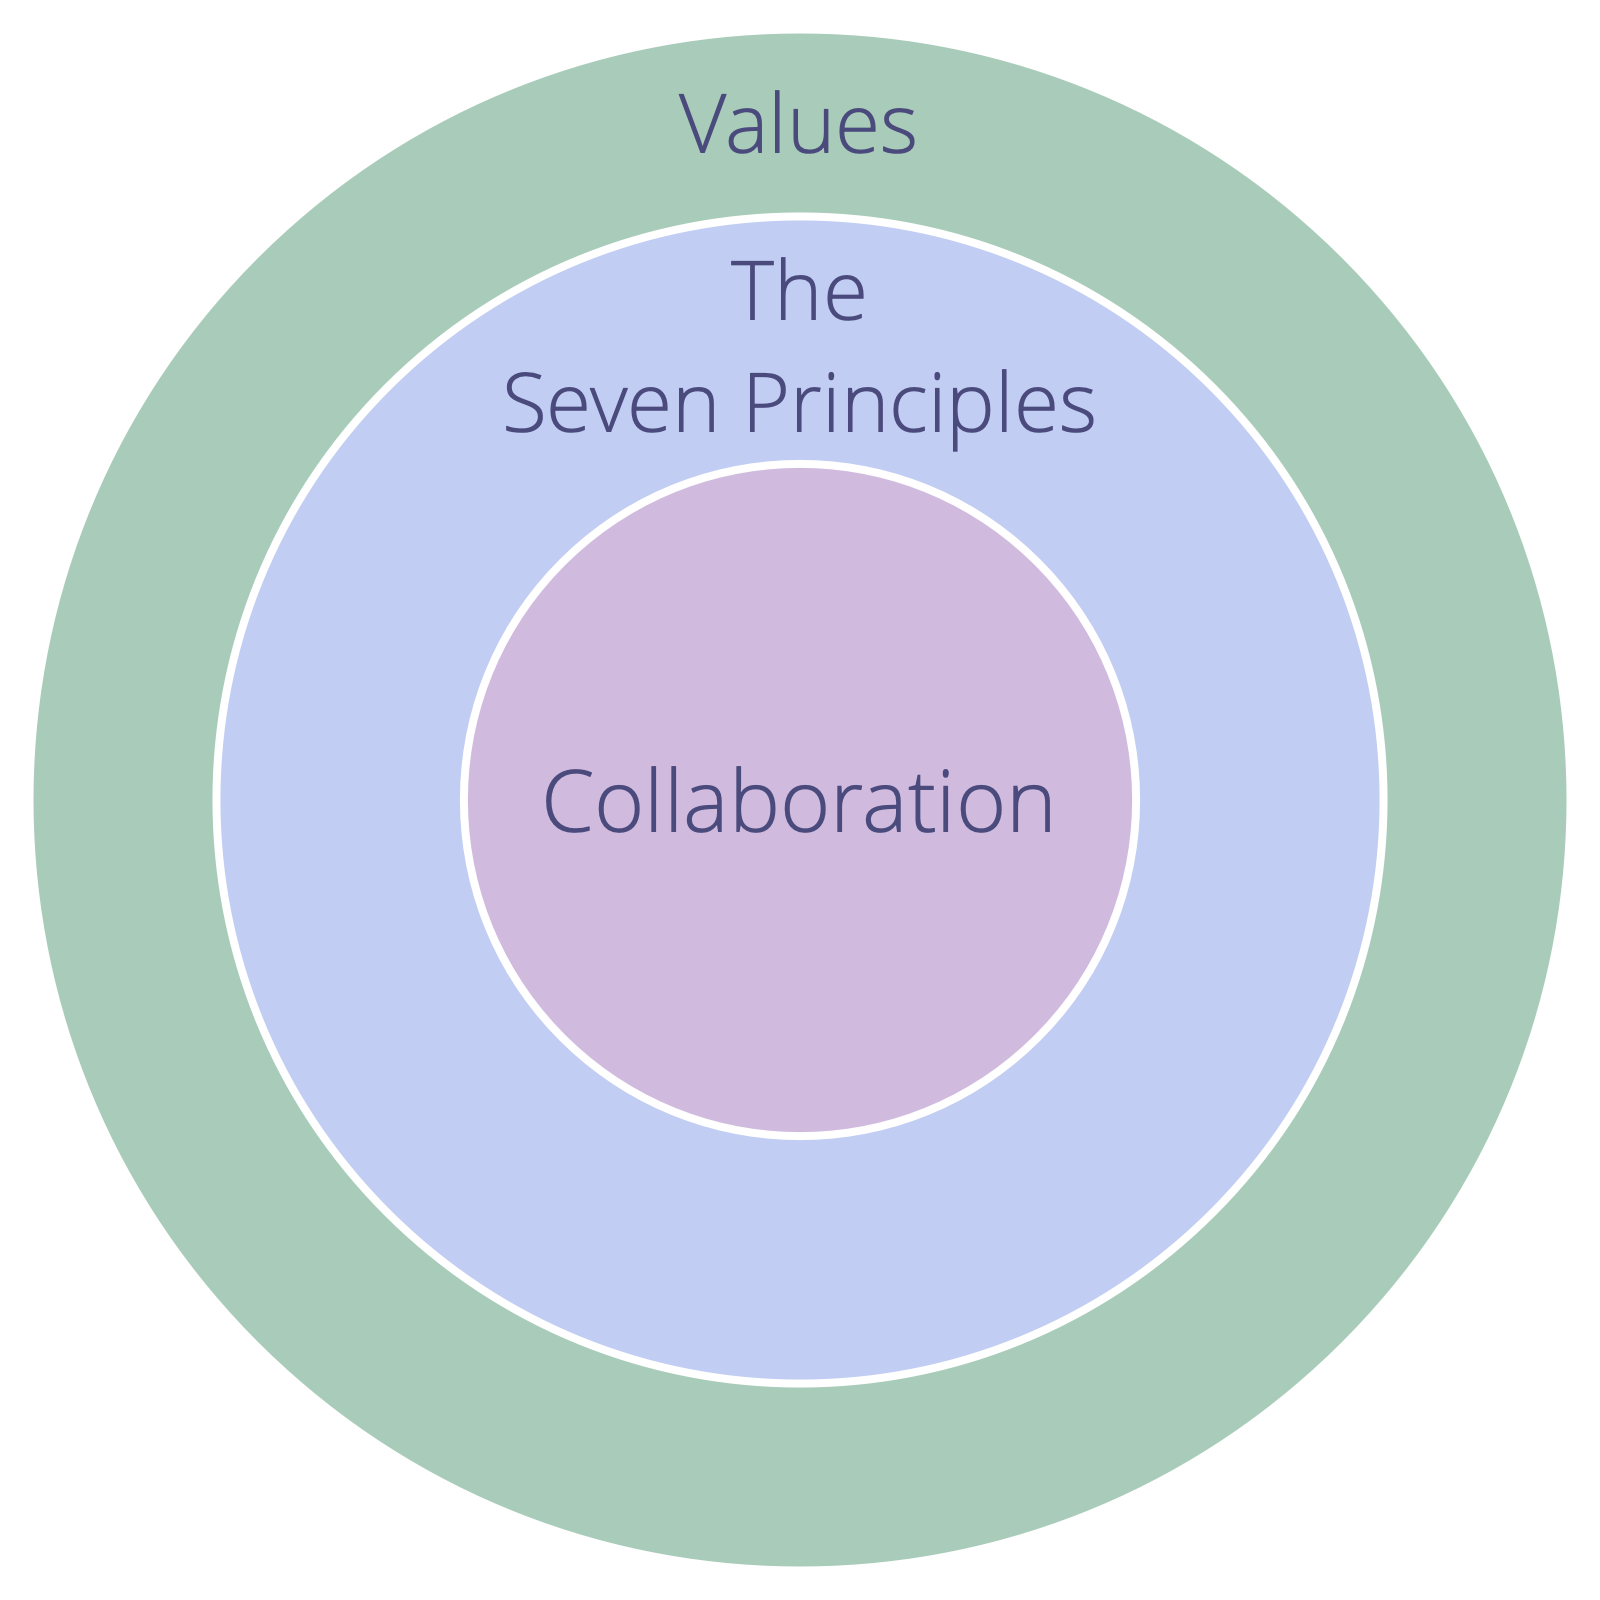 En organisations värderingar måste omfatta De Sju Principerna